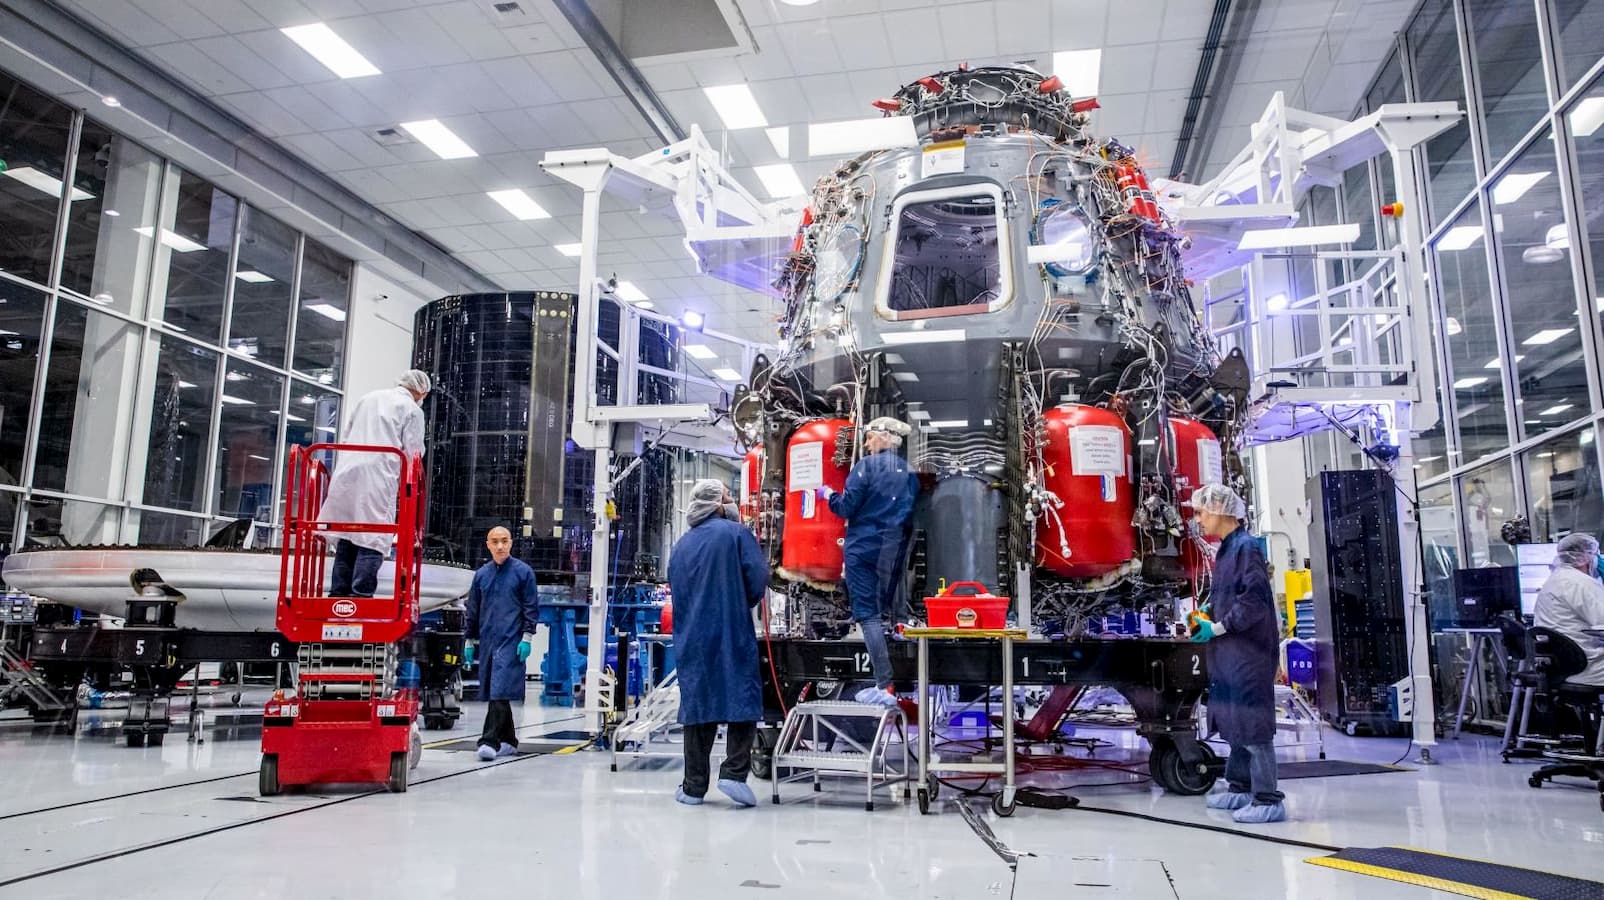 Funcionários da SpaceX trabalham na nave reutilizável Crew Dragon